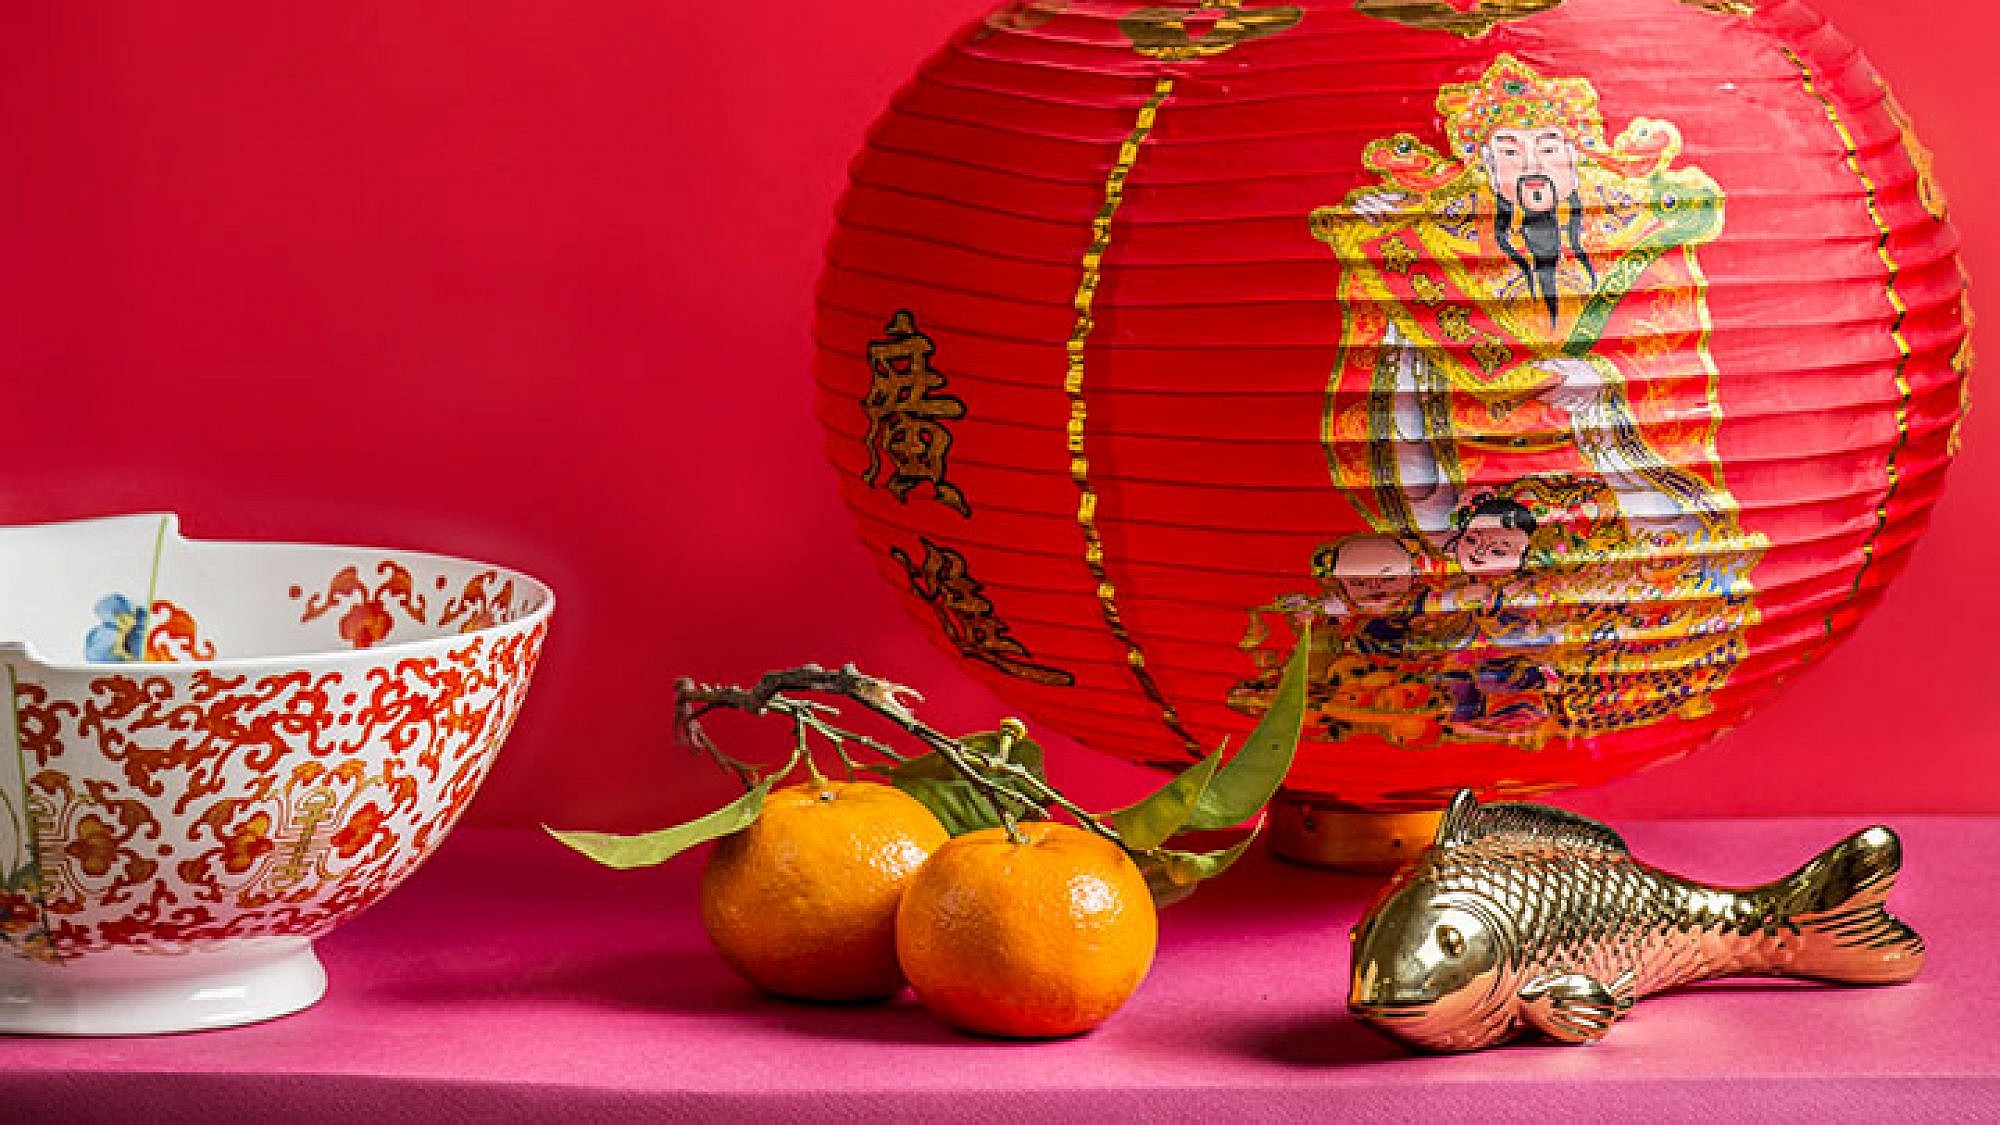 ראש השנה הסיני, גרסאות של השף יובל בן נריה למנות החג המסורתיות | צילום: בן יוסטר